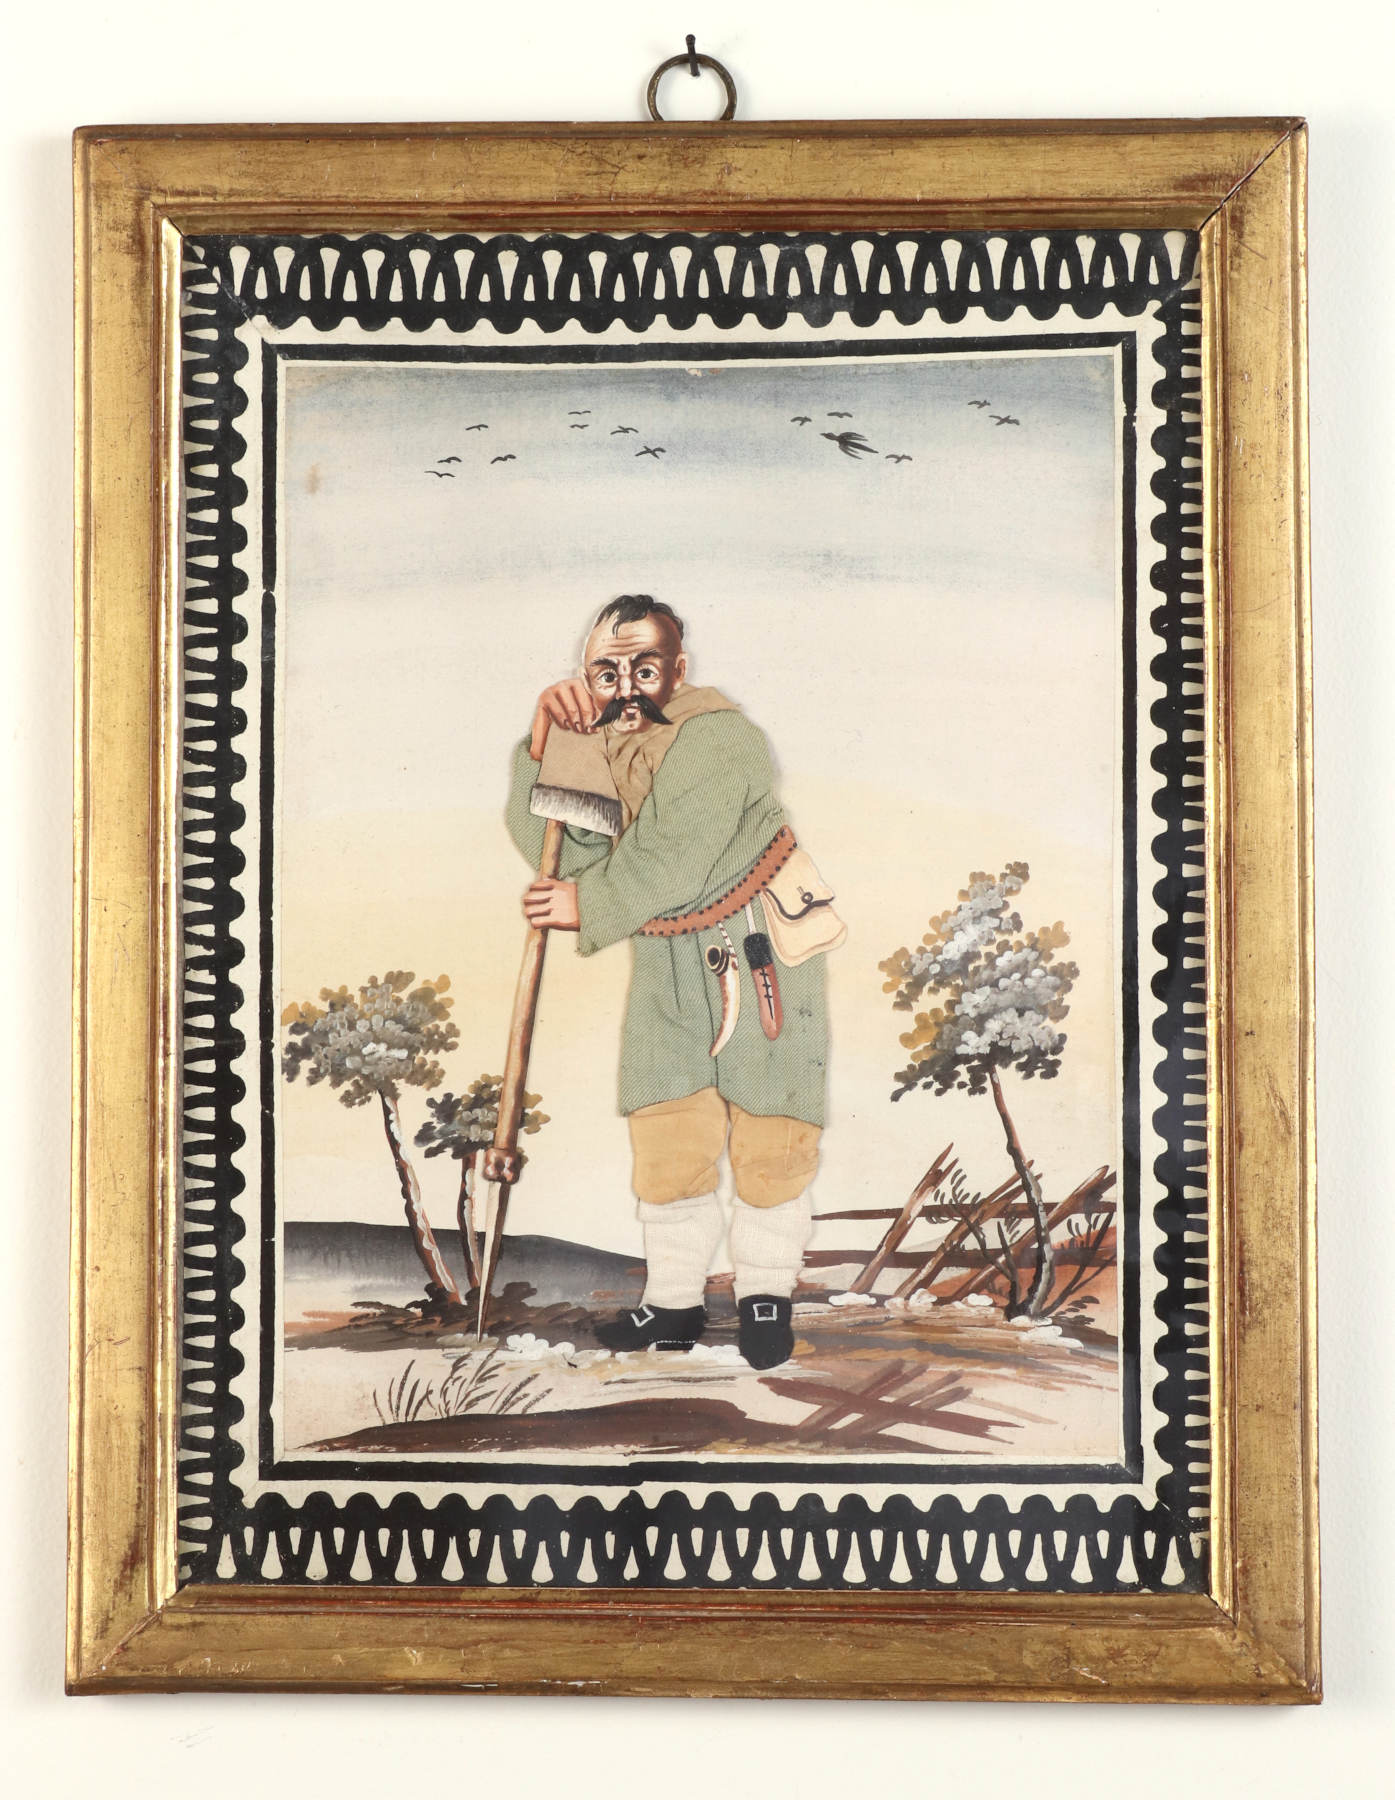 Pair of Folk Art Dressed Pictures (Habille), c. 1780